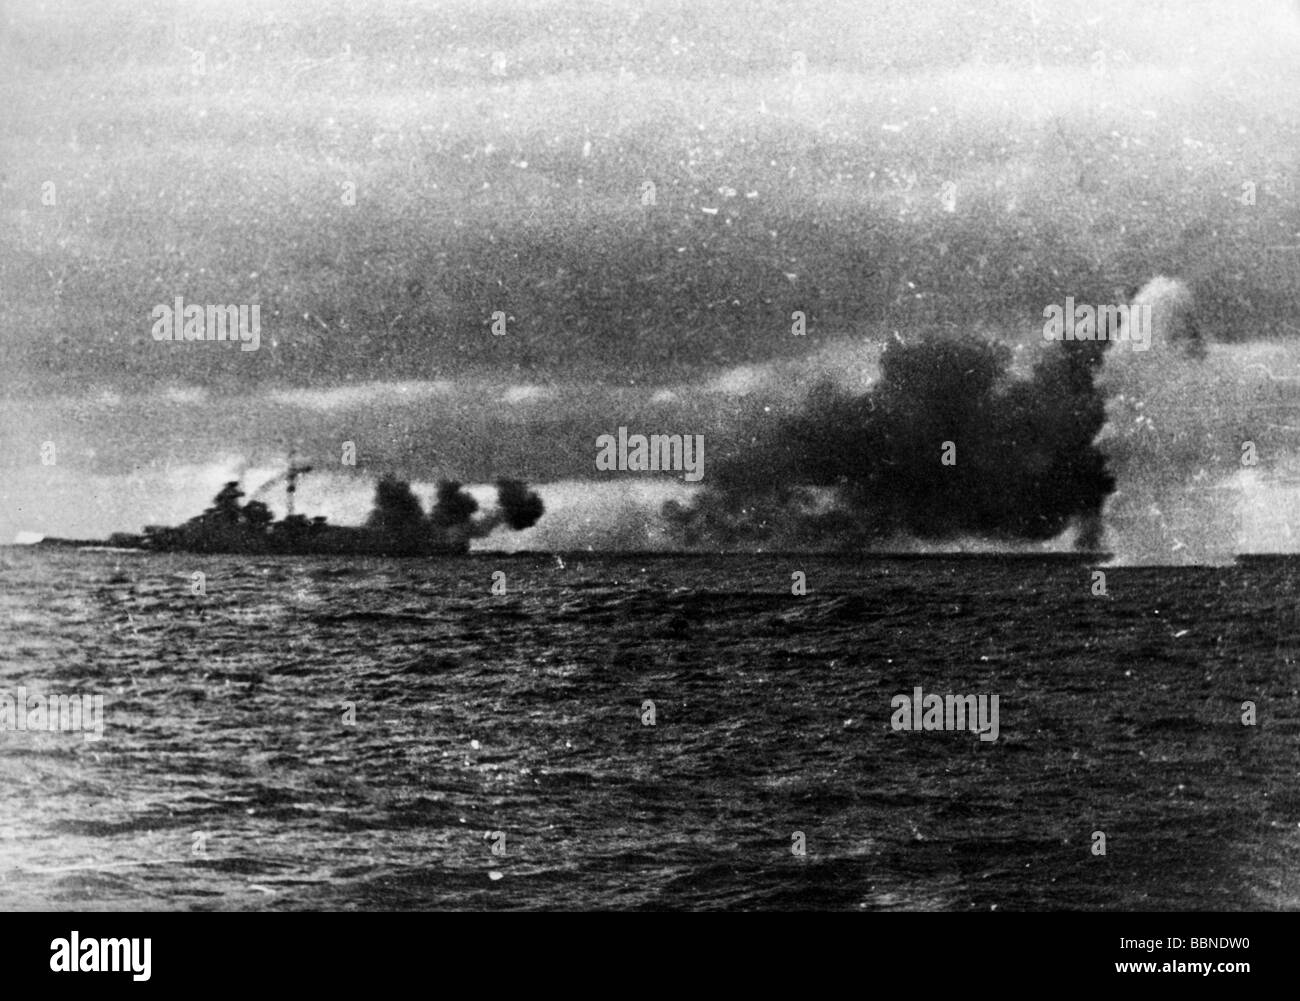 Eventos, Segunda Guerra Mundial / Segunda Guerra Mundial, guerra naval, Batalla del Estrecho de Dinamarca, salvo del acorazado británico 'HMS Hood' pierde al acorazado alemán 'Bismarck', 24.5.1941, Foto de stock